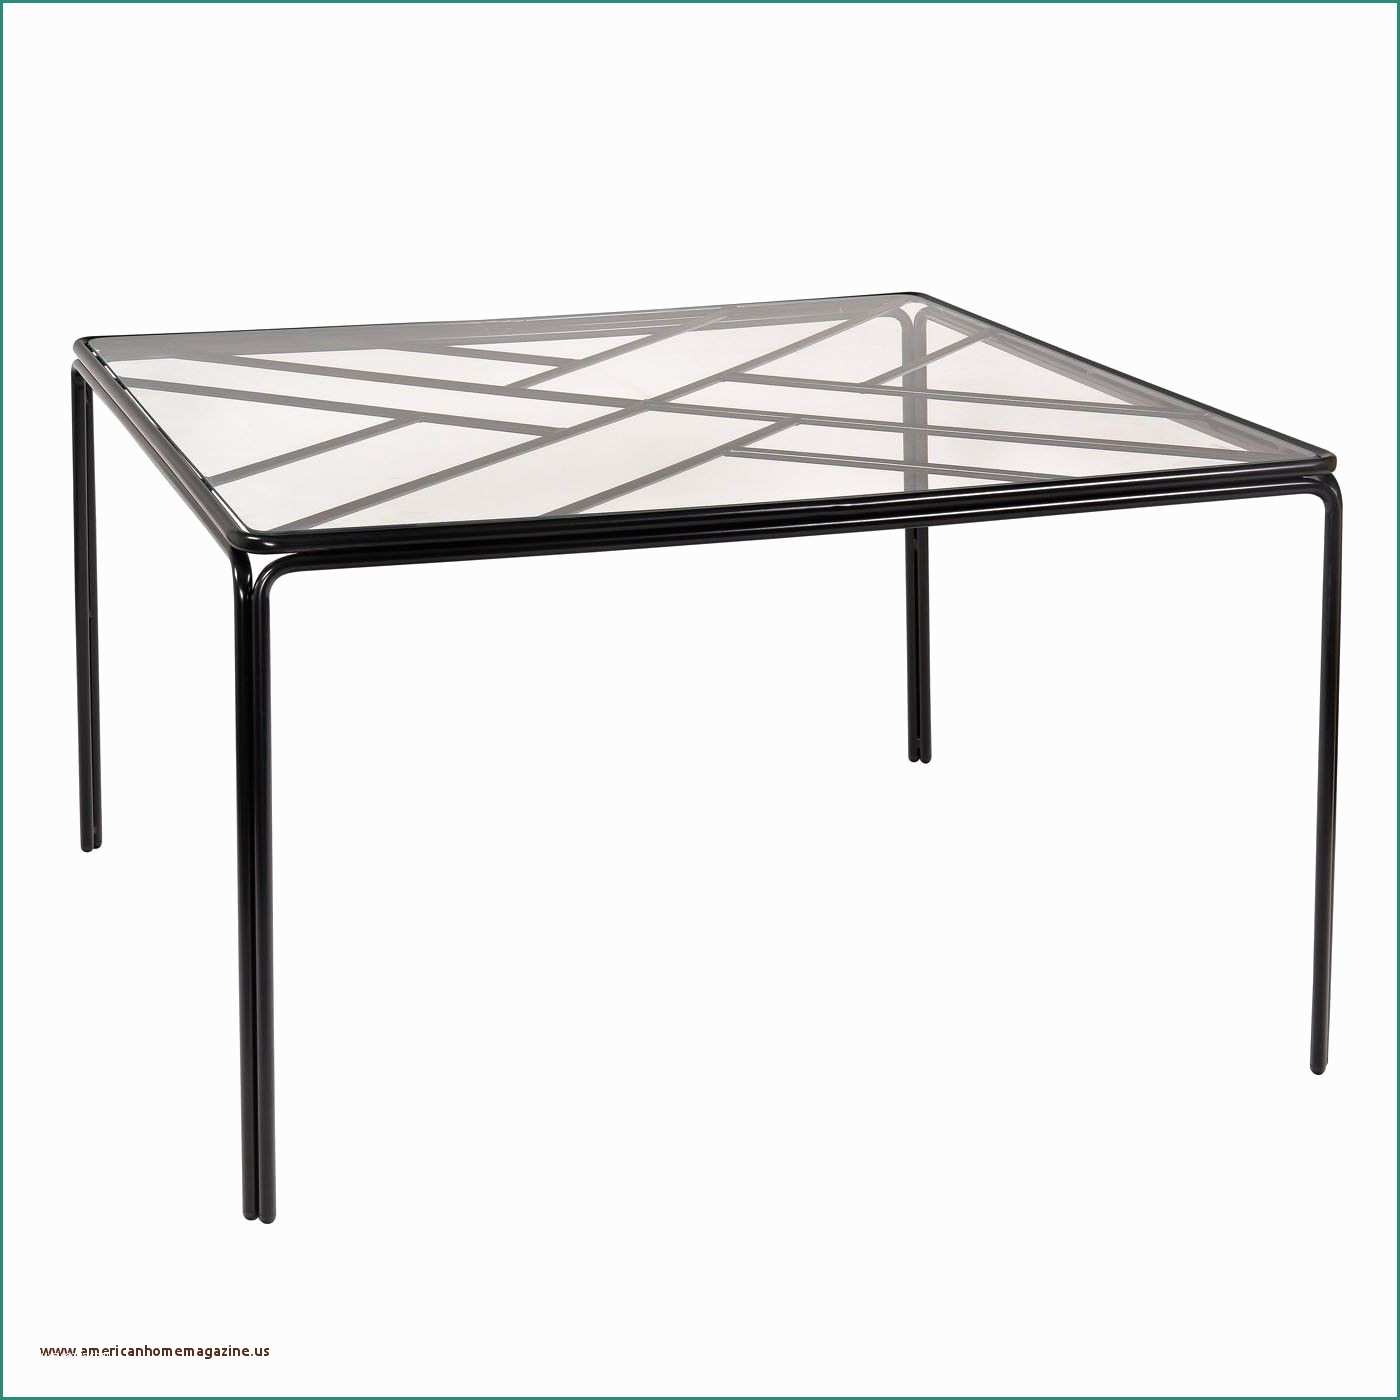 Gazebo Design Moderno E Download Wood Dining Table Design über Tisch 3m